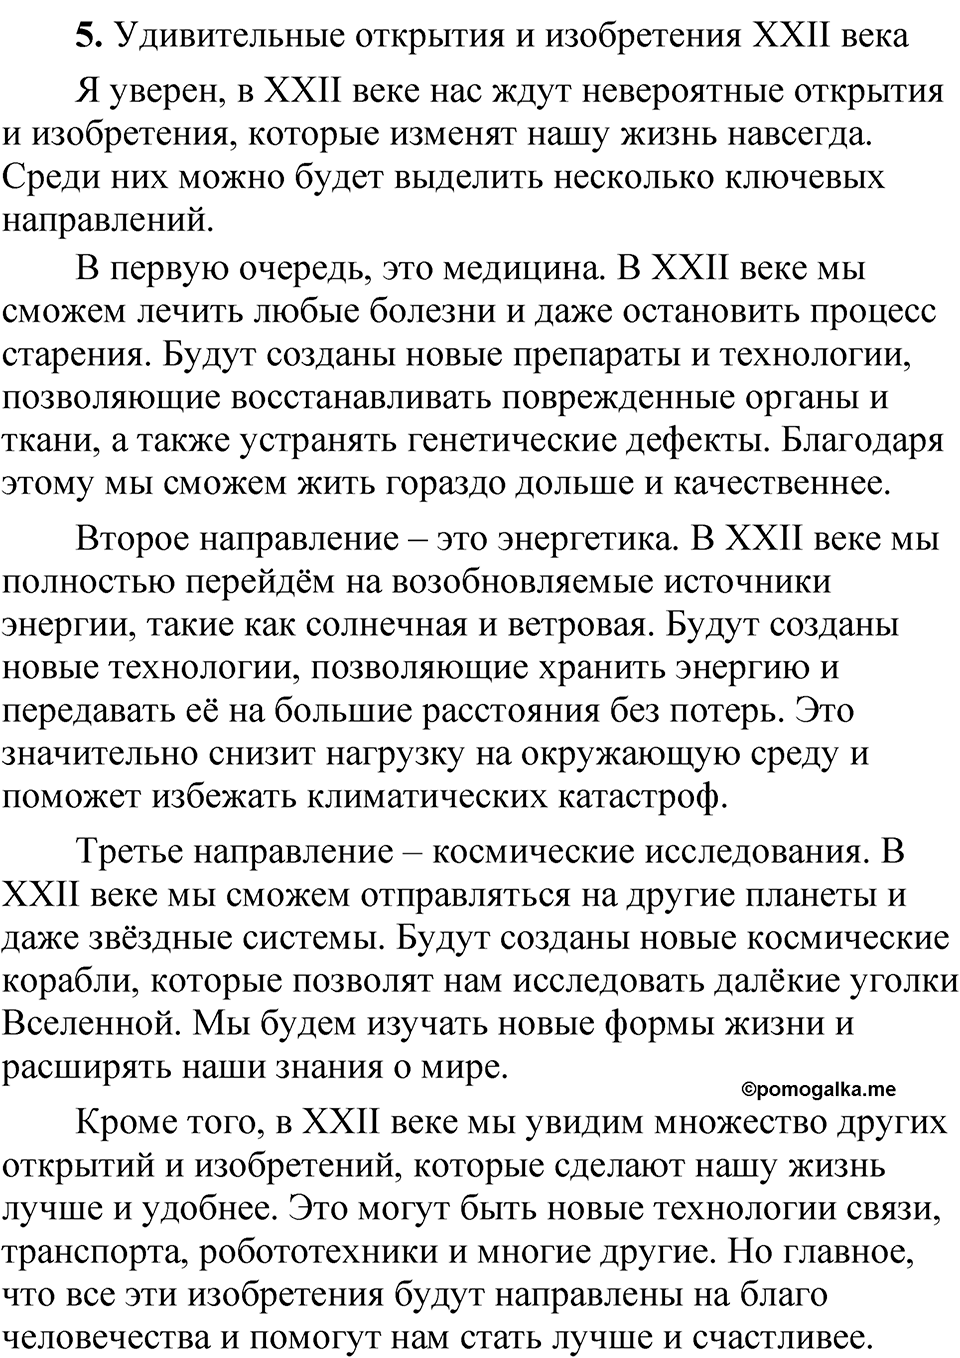 страница 137 Анализируем текст русский язык 5 класс Быстрова, Кибирева 2 часть 2021 год